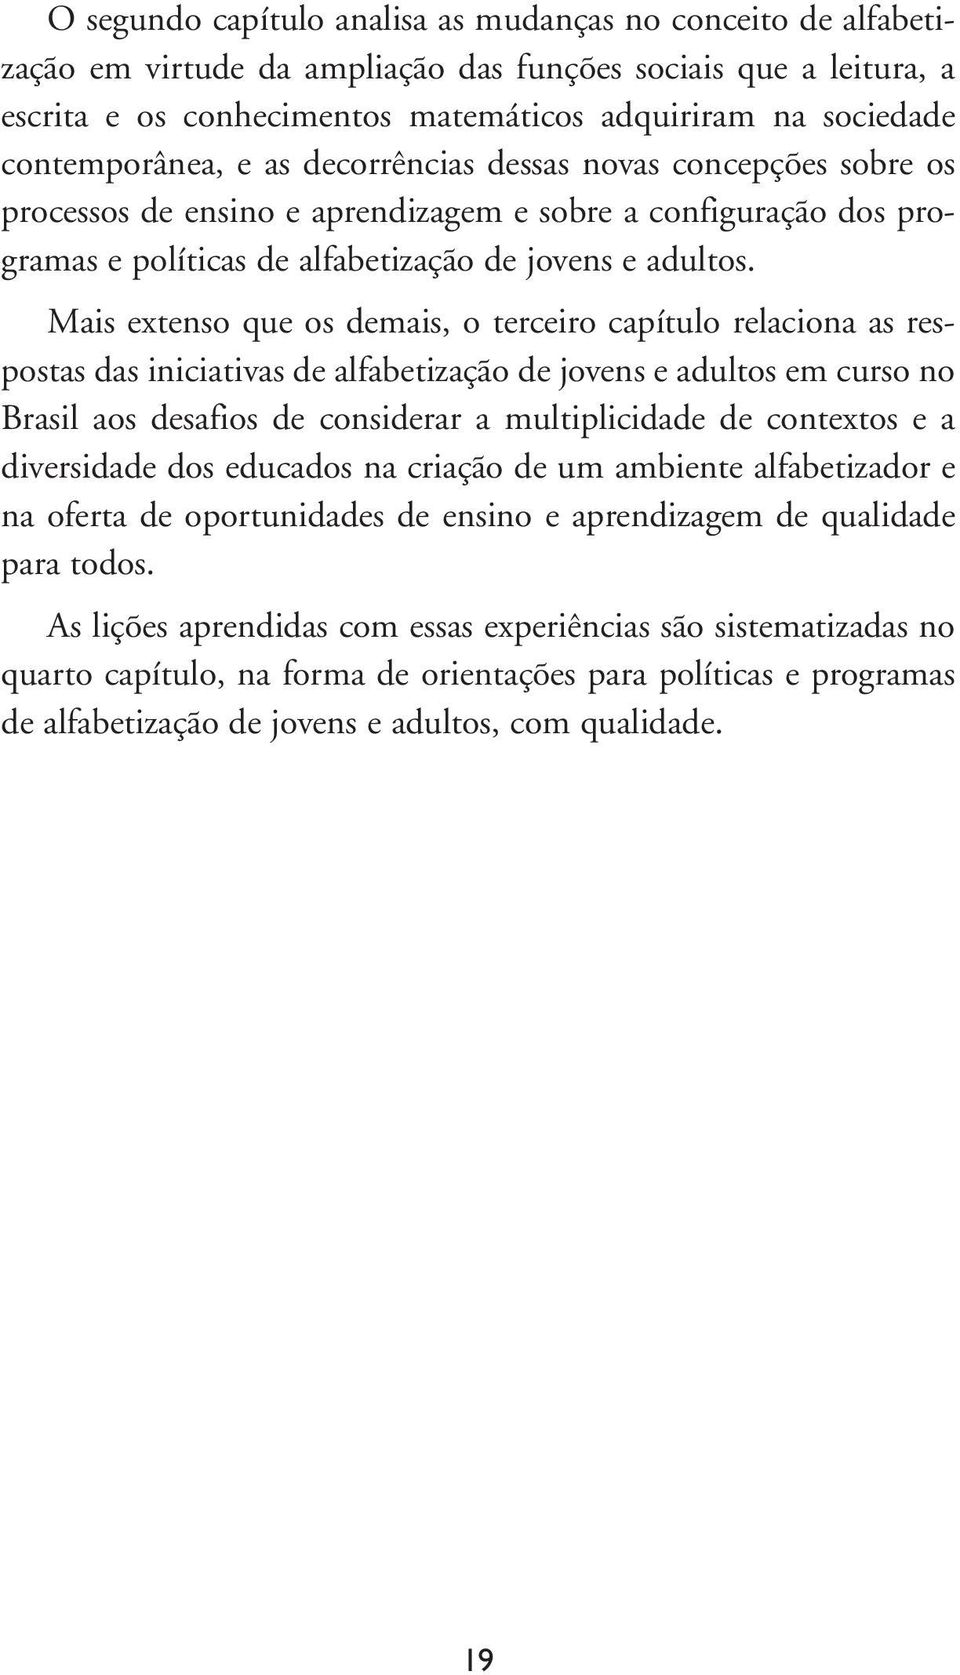 Mais extenso que os demais, o terceiro capítulo relaciona as respostas das iniciativas de alfabetização de jovens e adultos em curso no Brasil aos desafios de considerar a multiplicidade de contextos